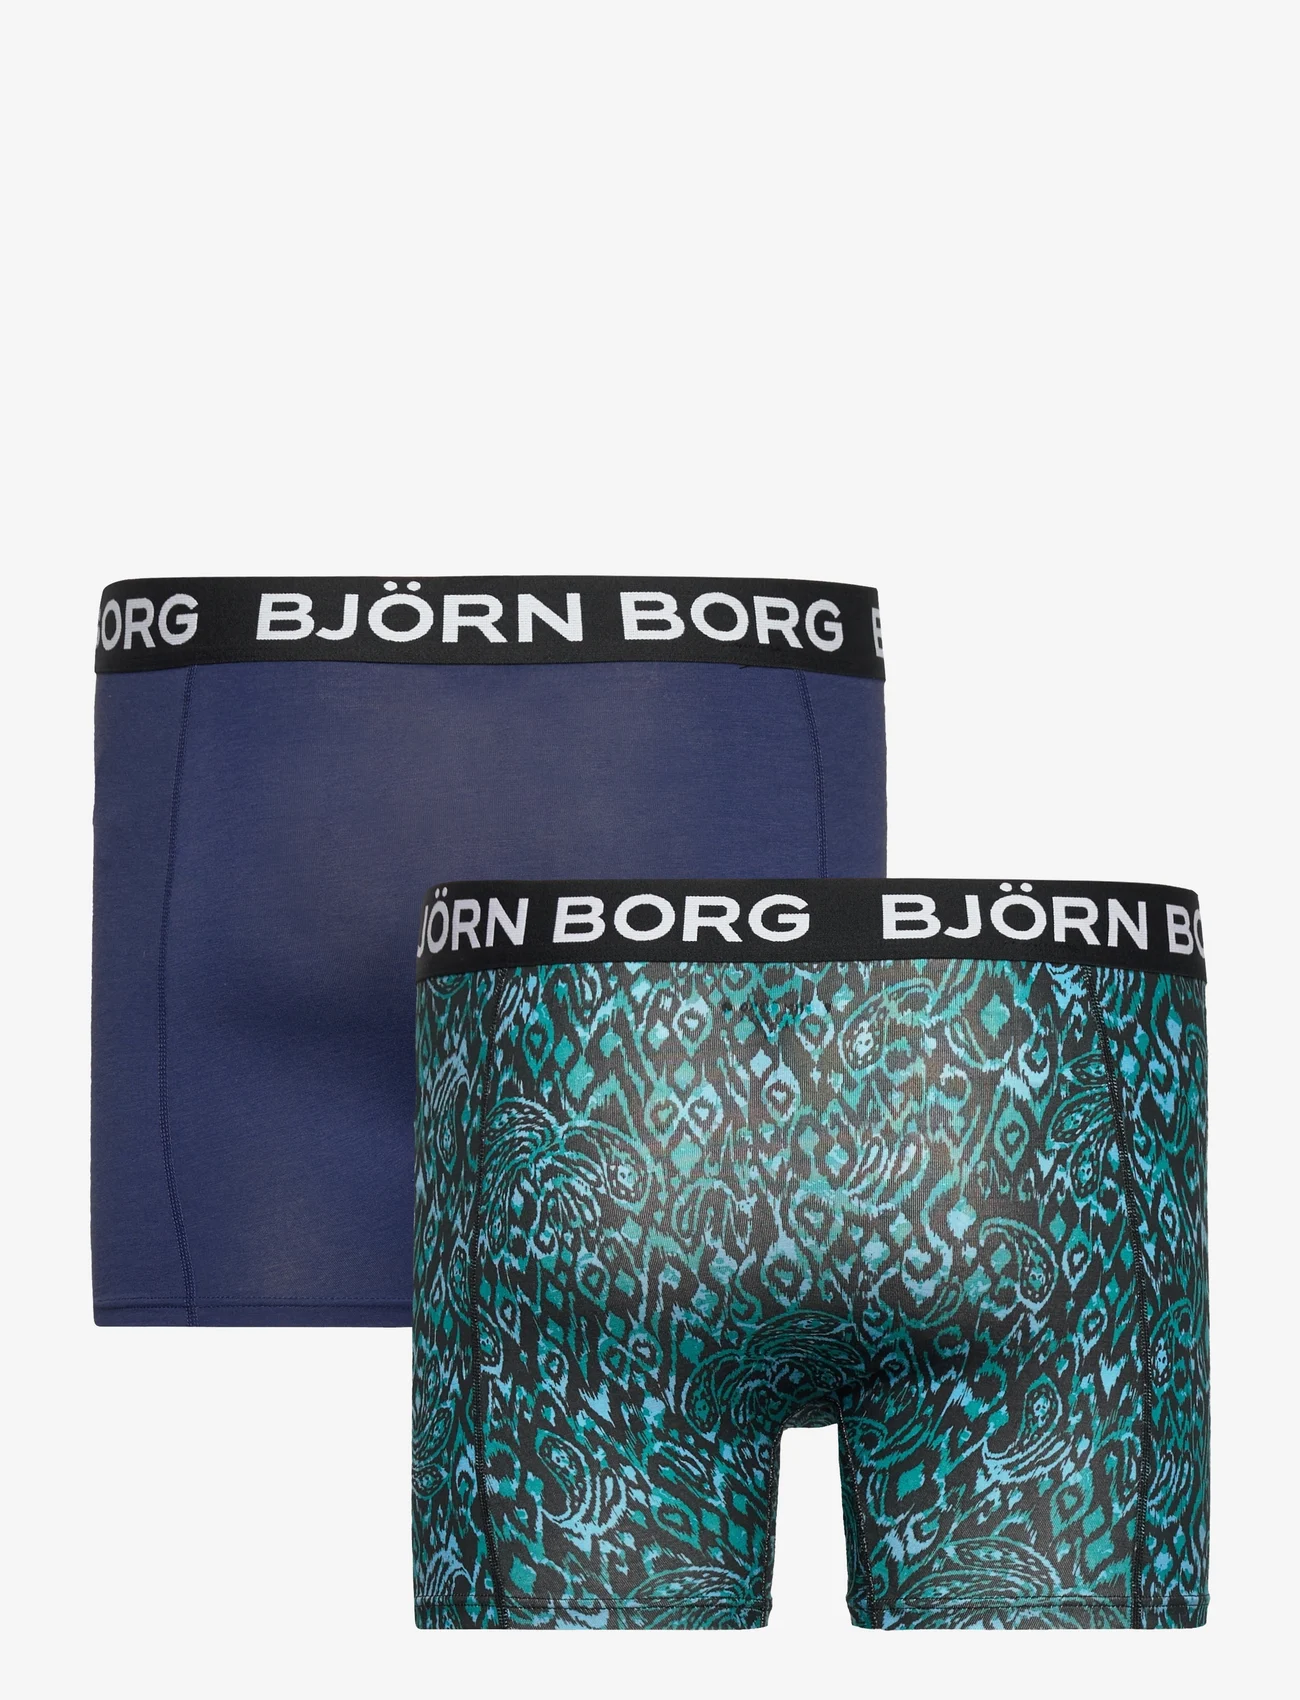 Björn Borg - BAMBOO COTTON BLEND BOXER 2p - boxerkalsonger - multipack 1 - 1